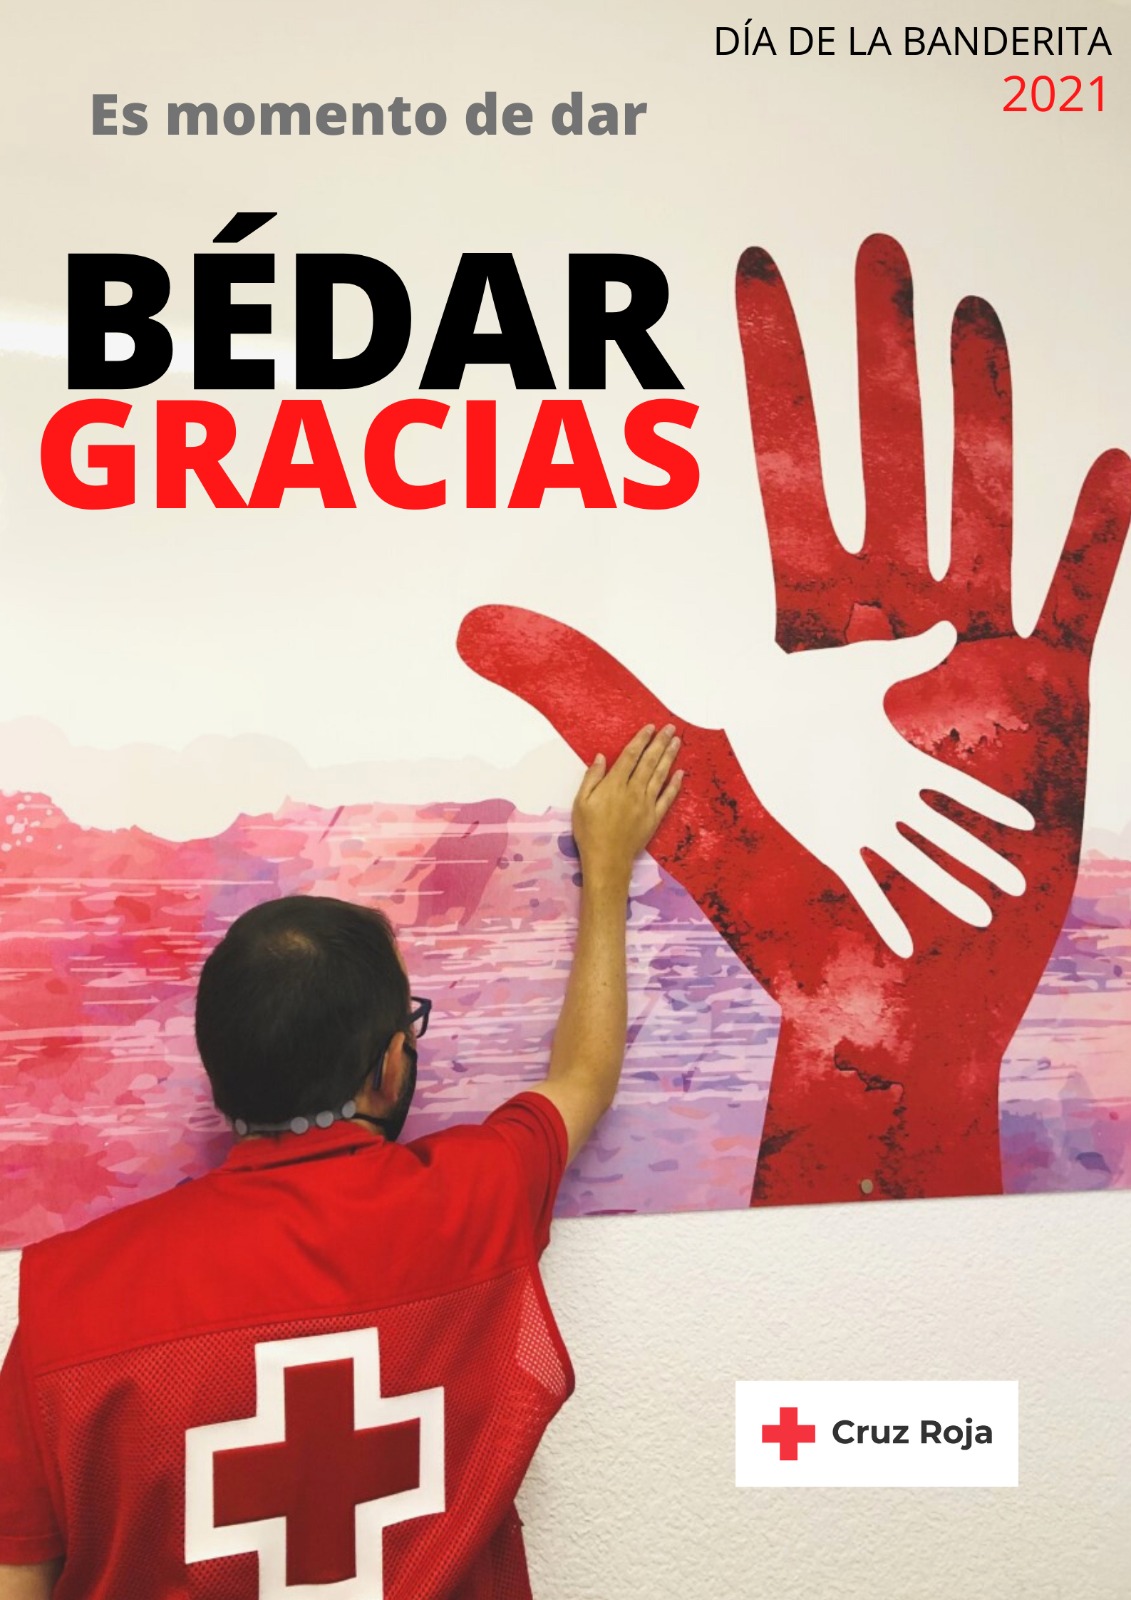 Cruz Roja celebra un histórico Día de la Banderita sin huchas y lo dedica a dar las GRACIAS